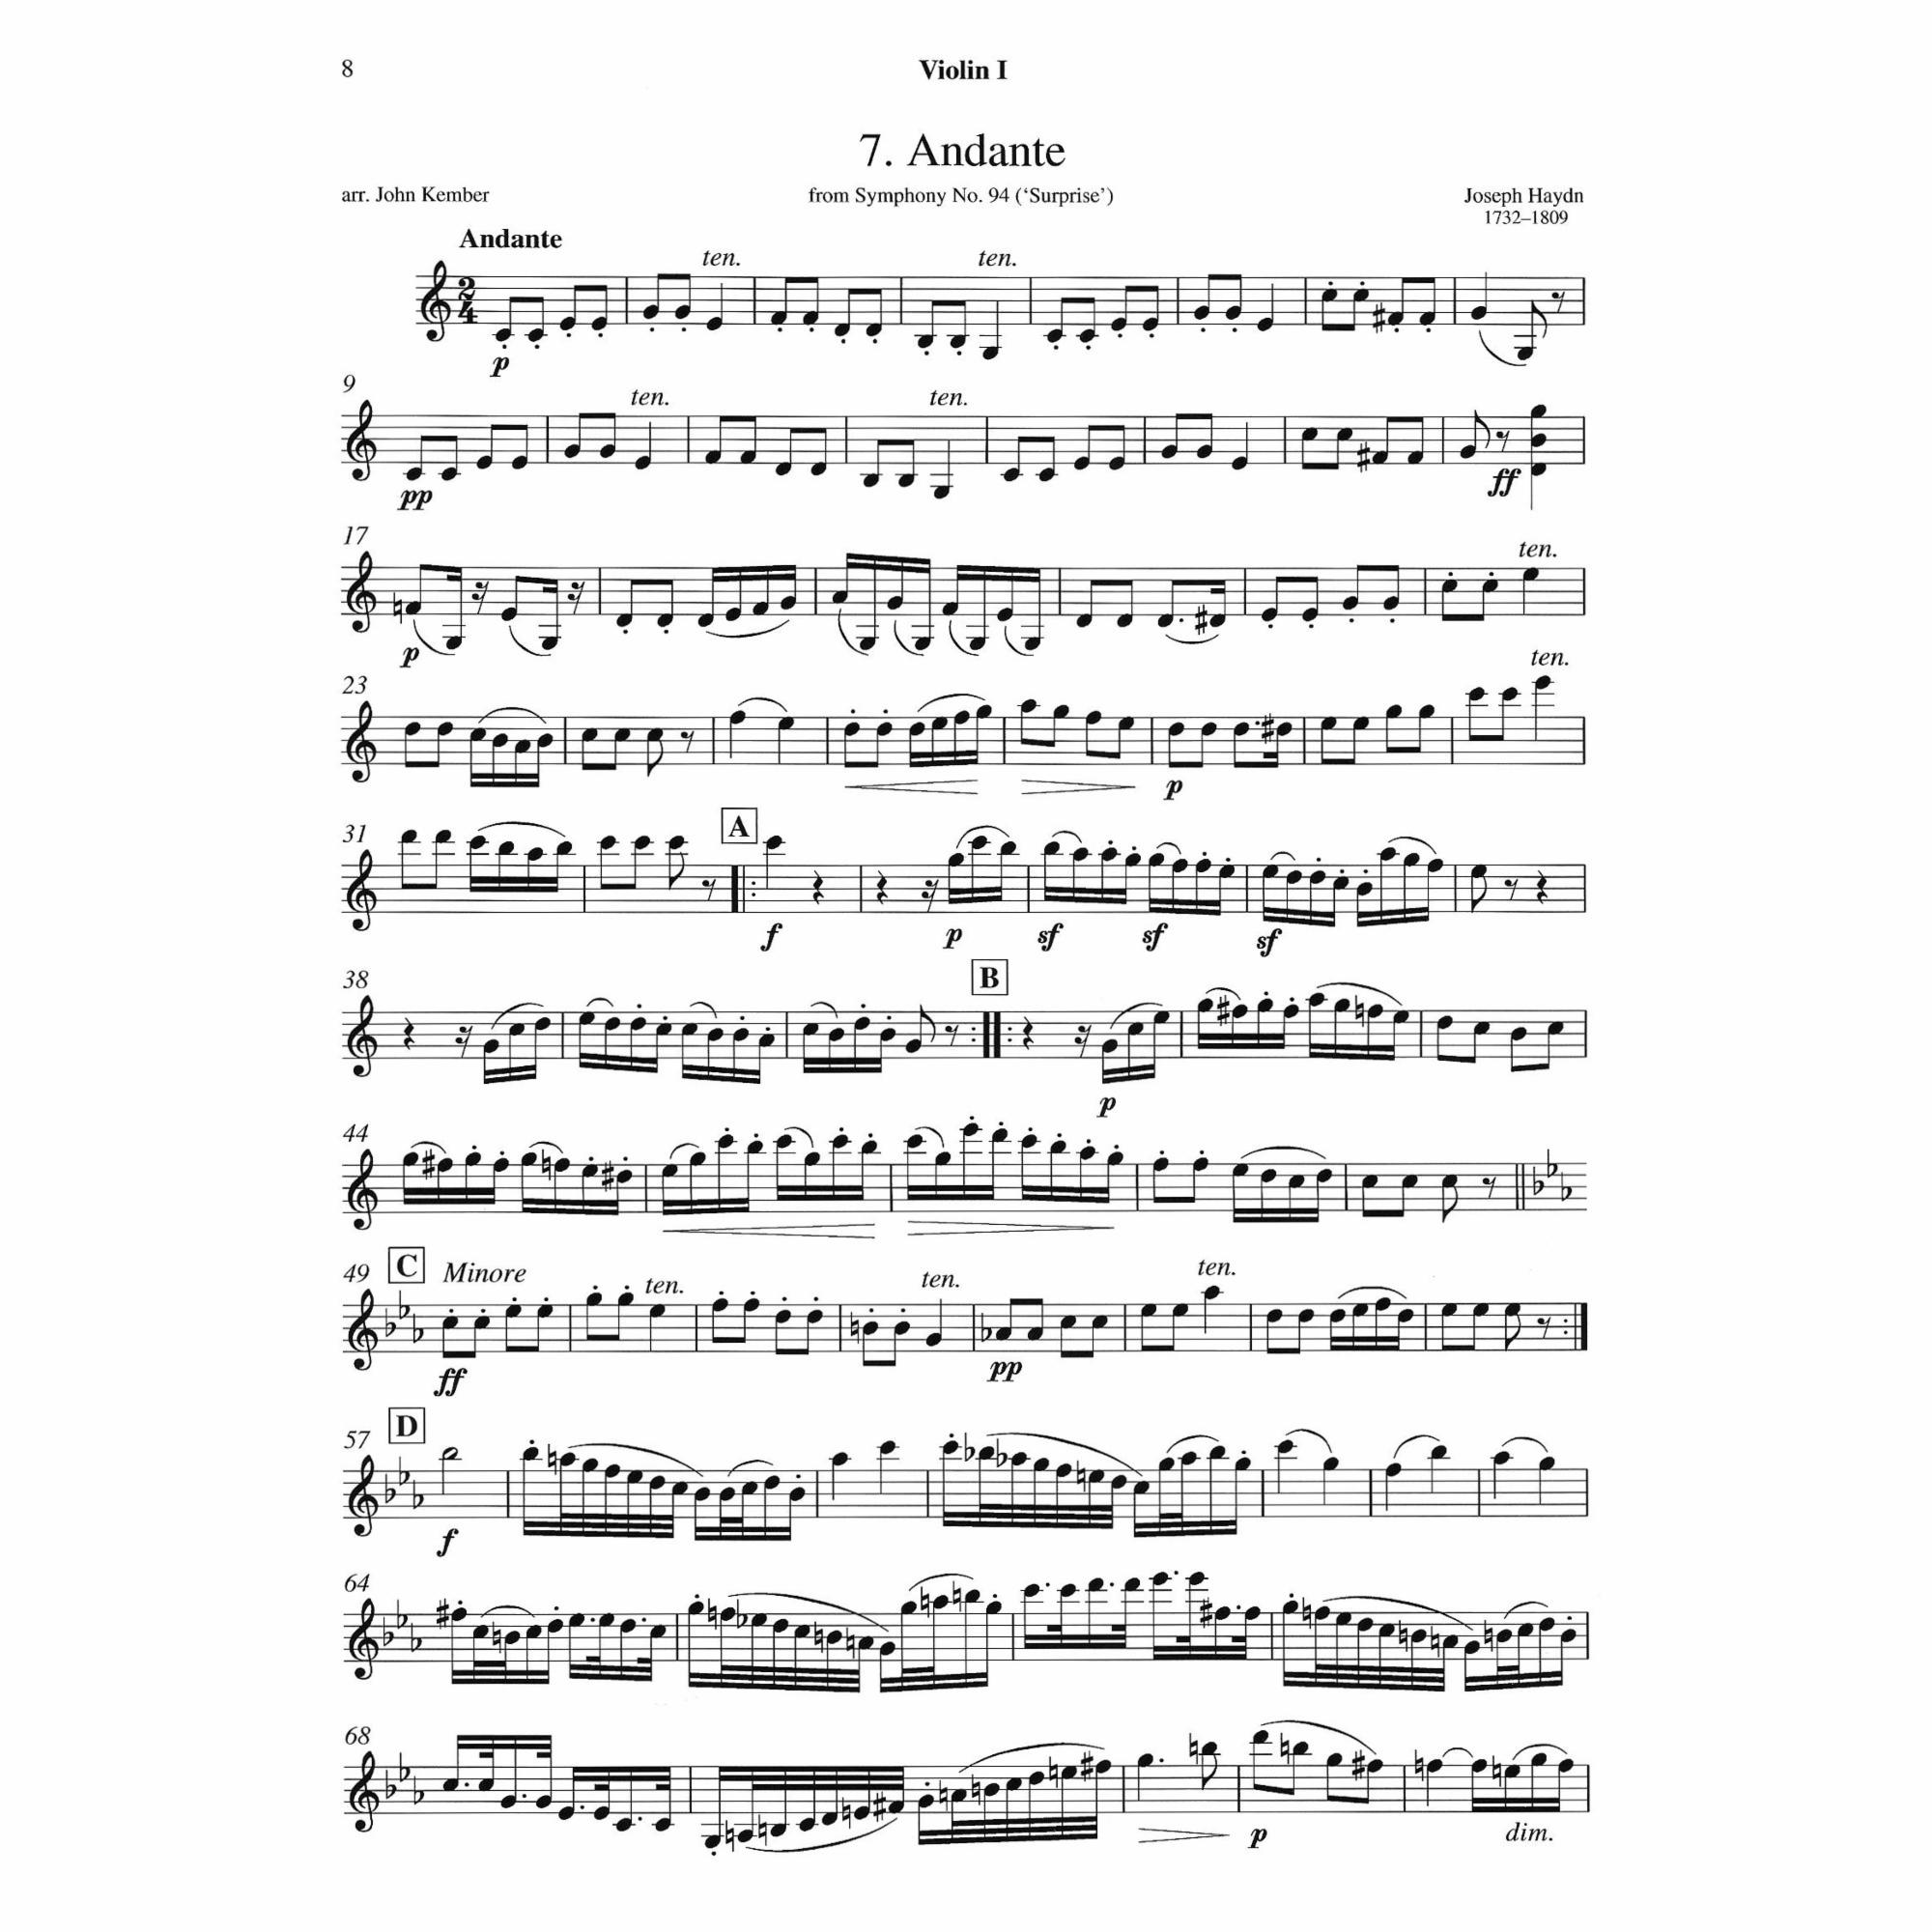 Sample: Violin I (Pg. 8)